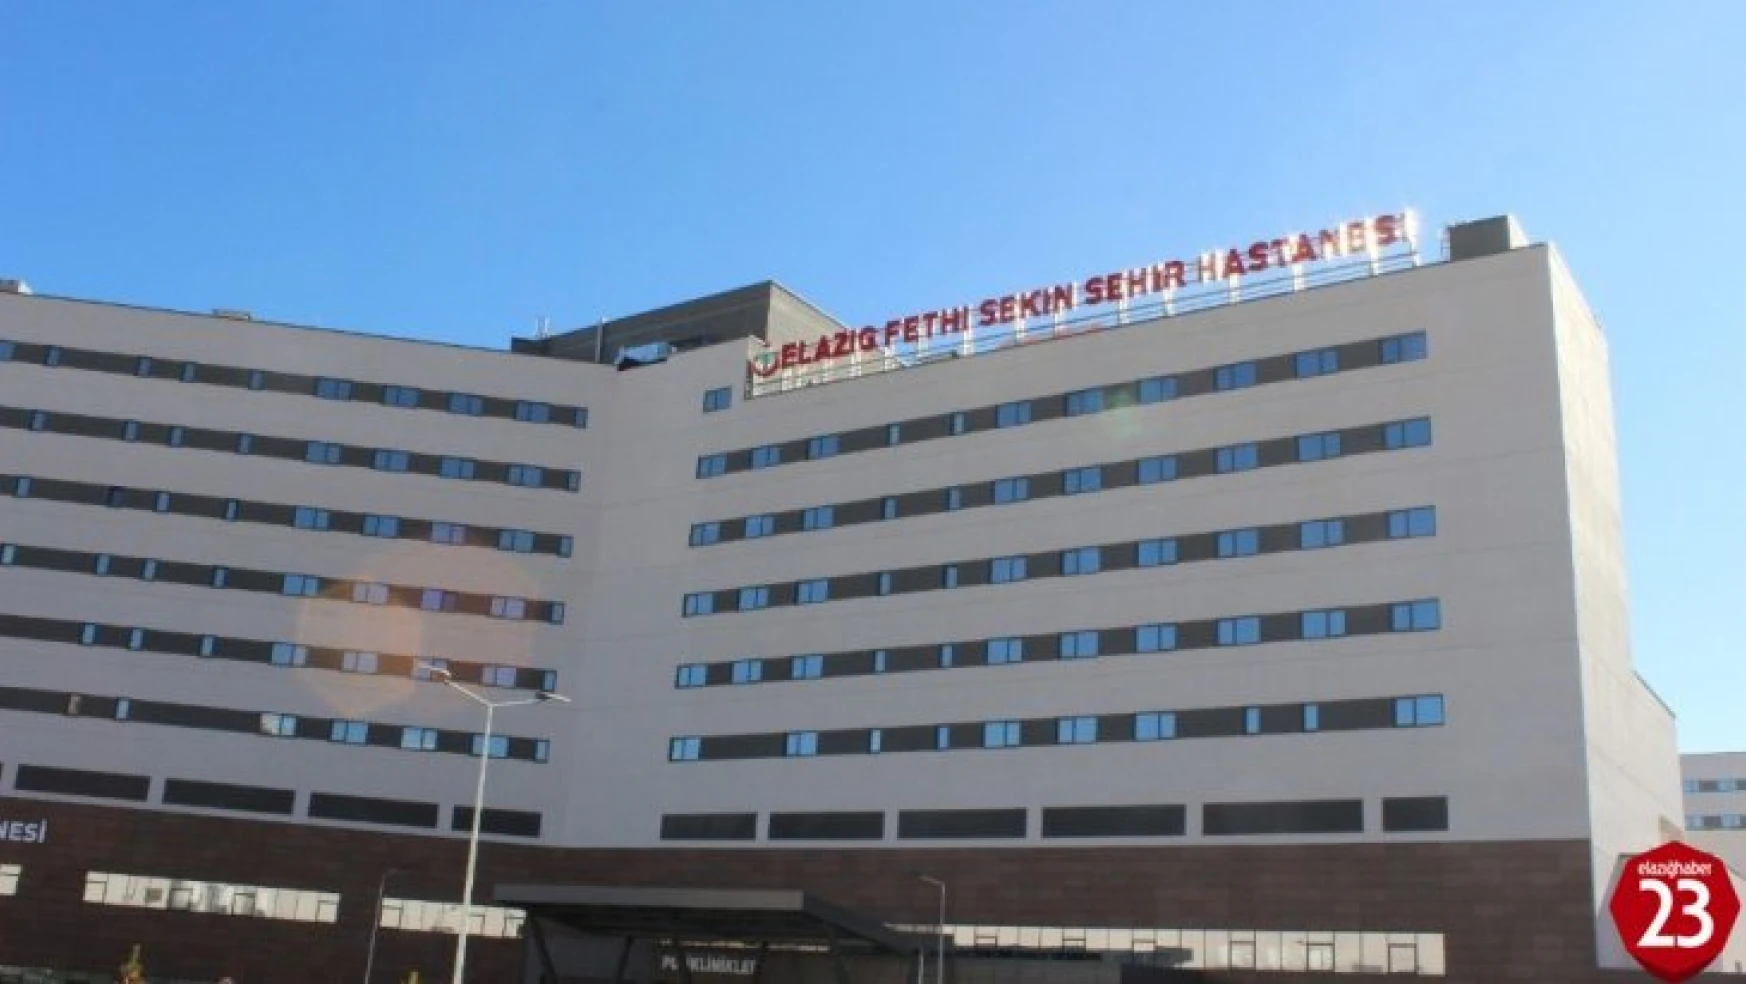 Elazığ Şehir Hastanesinde Her Adımda Teknoloji